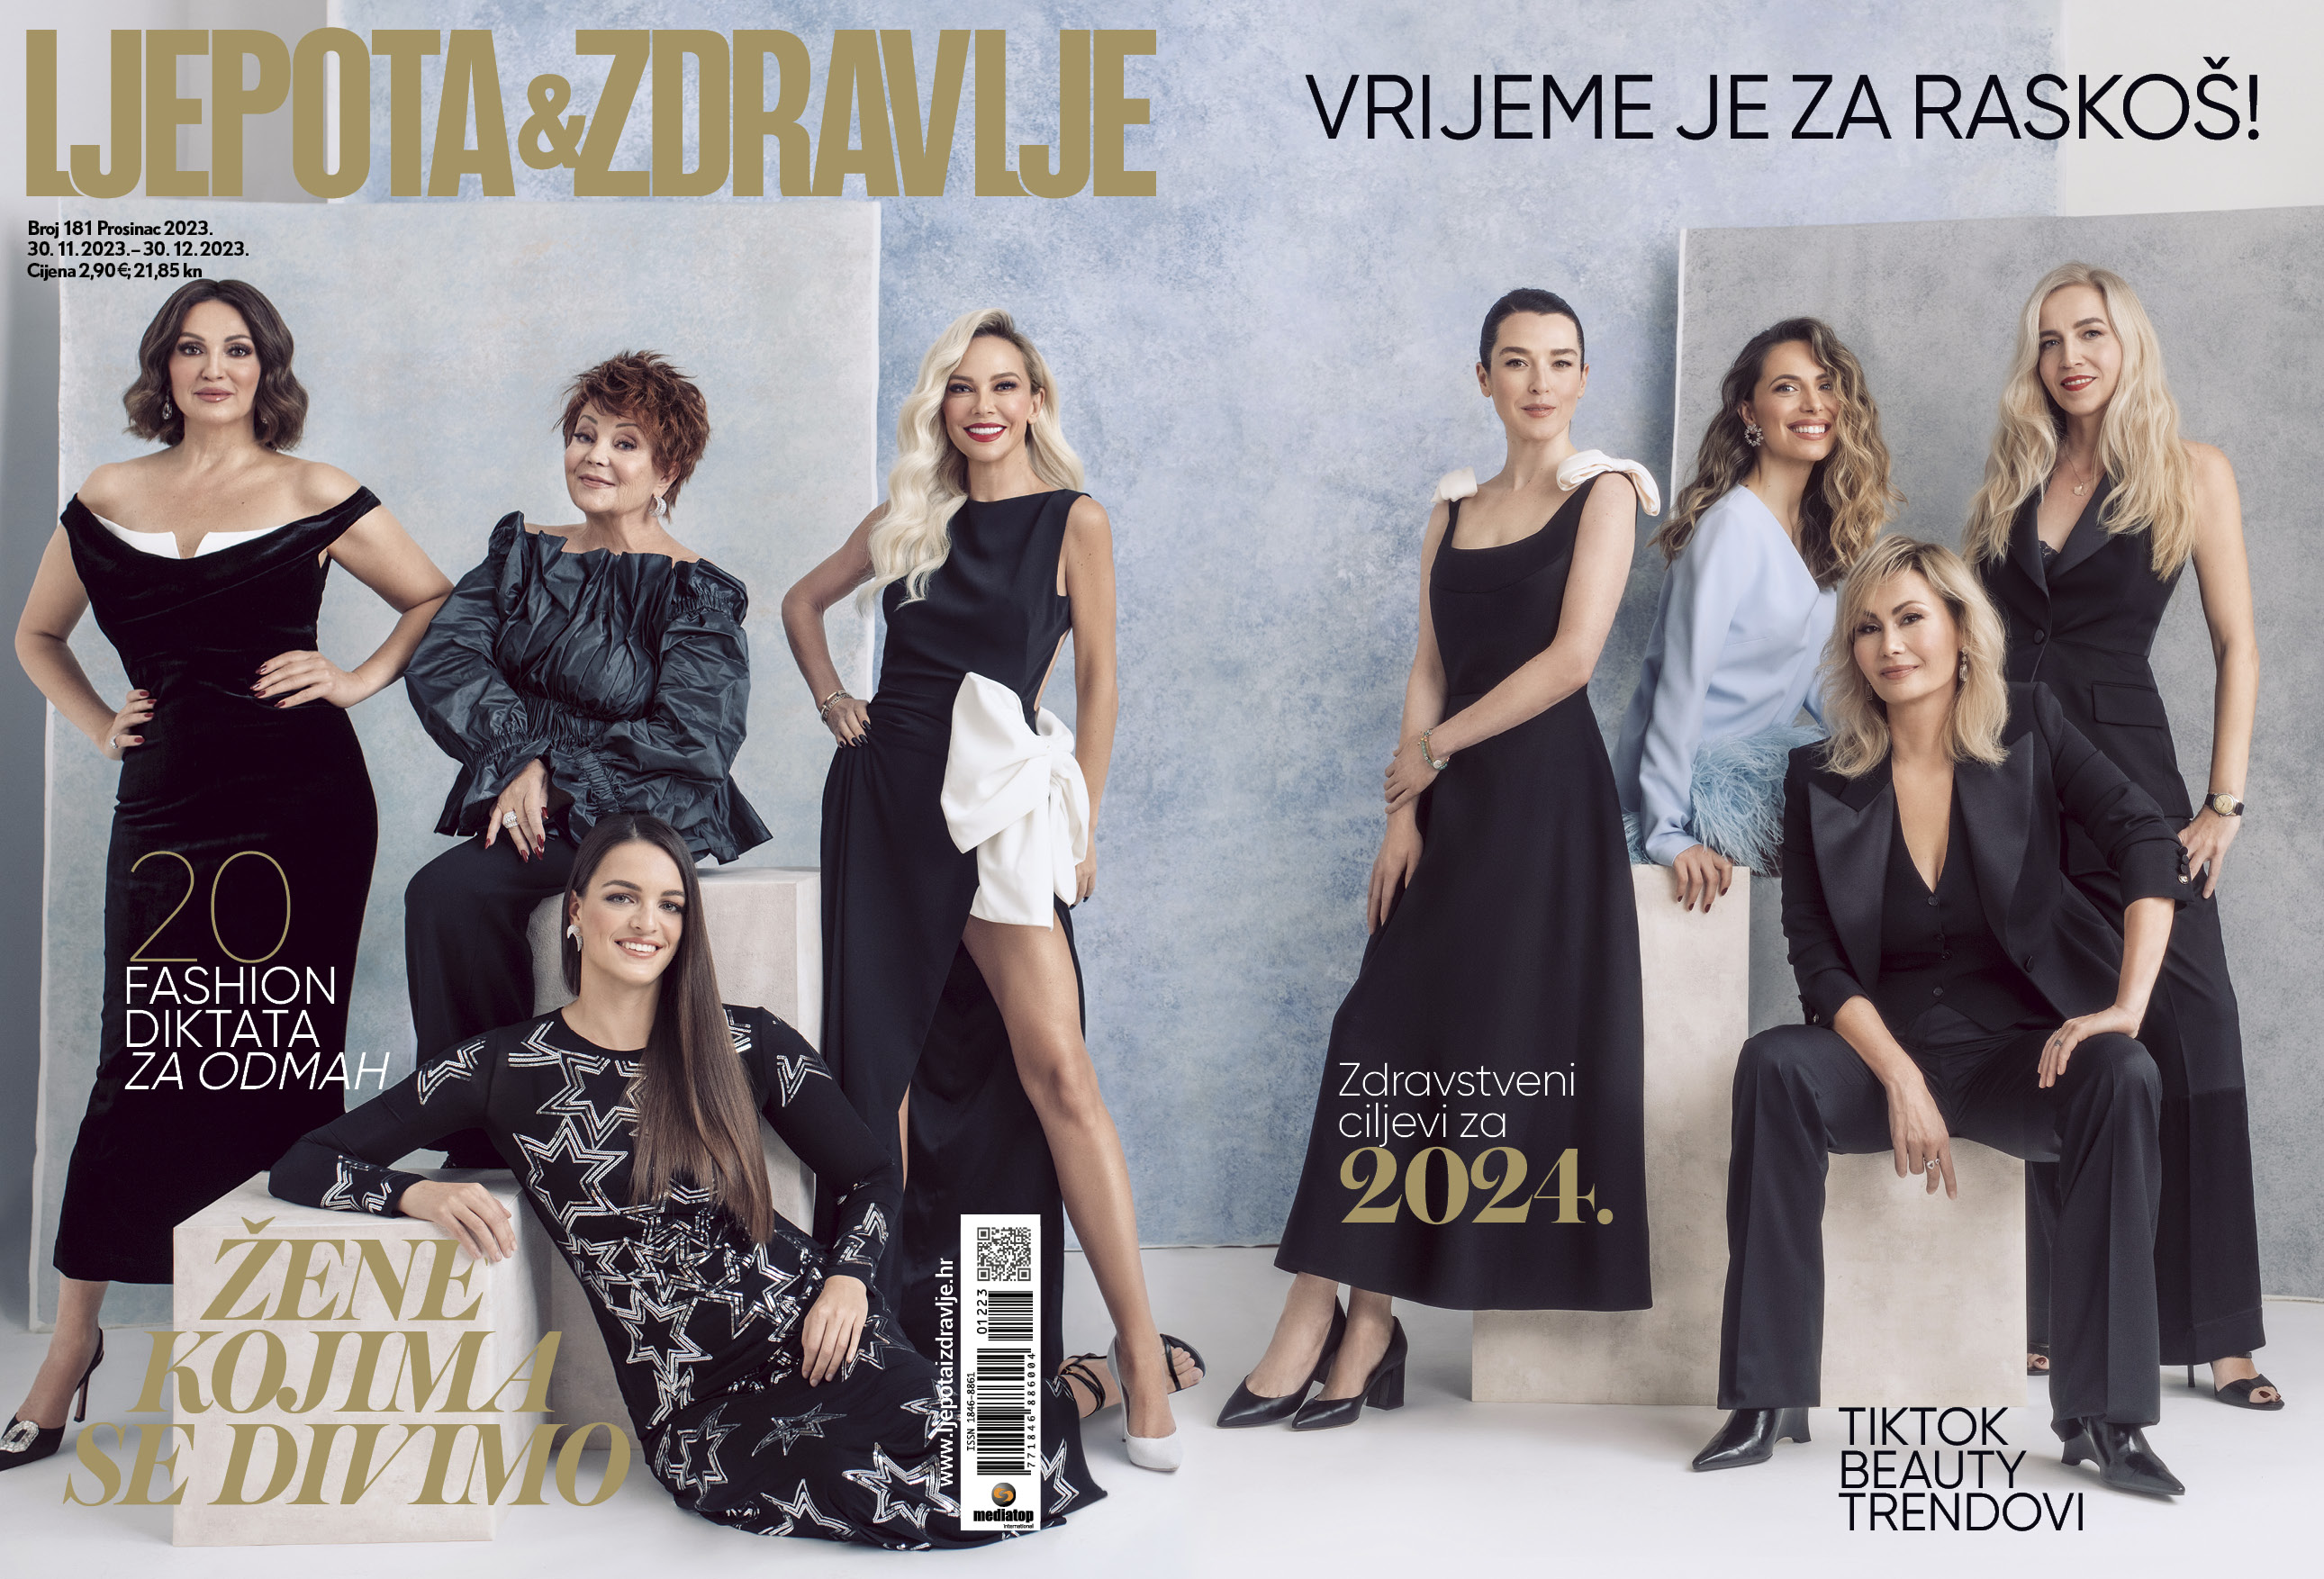 Osam inspirativnih žena krasi naslovnicu prosinačkog izdanja časopisa Ljepota&zdravlje 